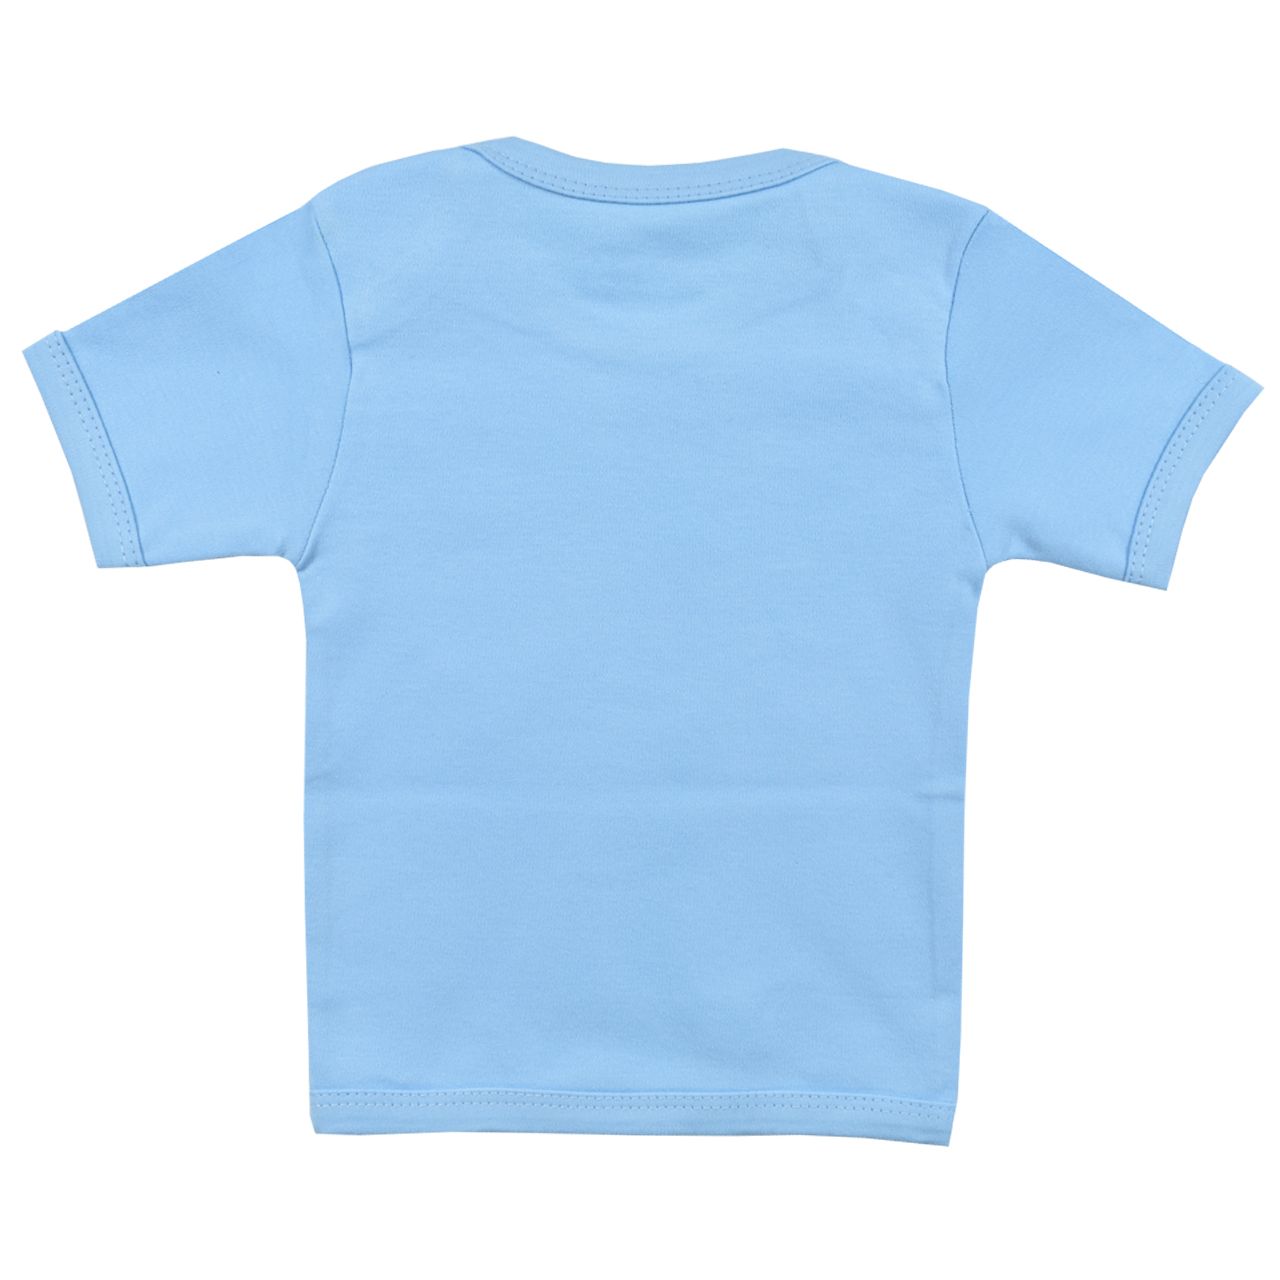 ست تی شرت و شلوار نوزادی اسپیکو مدل کاج کد 1 -  - 5